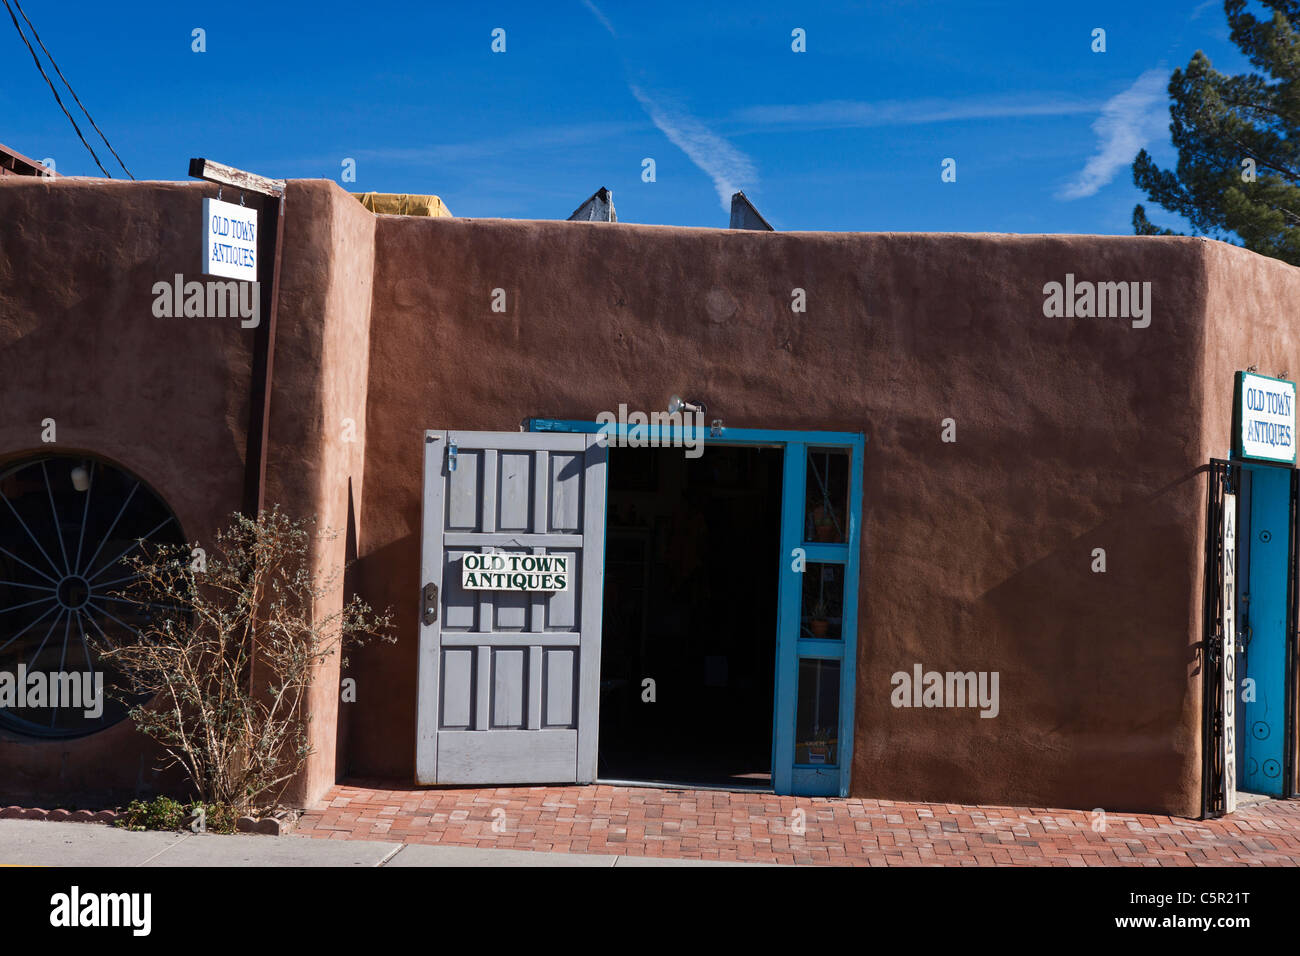 Bâtiment de style adobe pour magasin d'antiquités de la vieille ville, Albuquerque, New Mexico, United States of America Banque D'Images